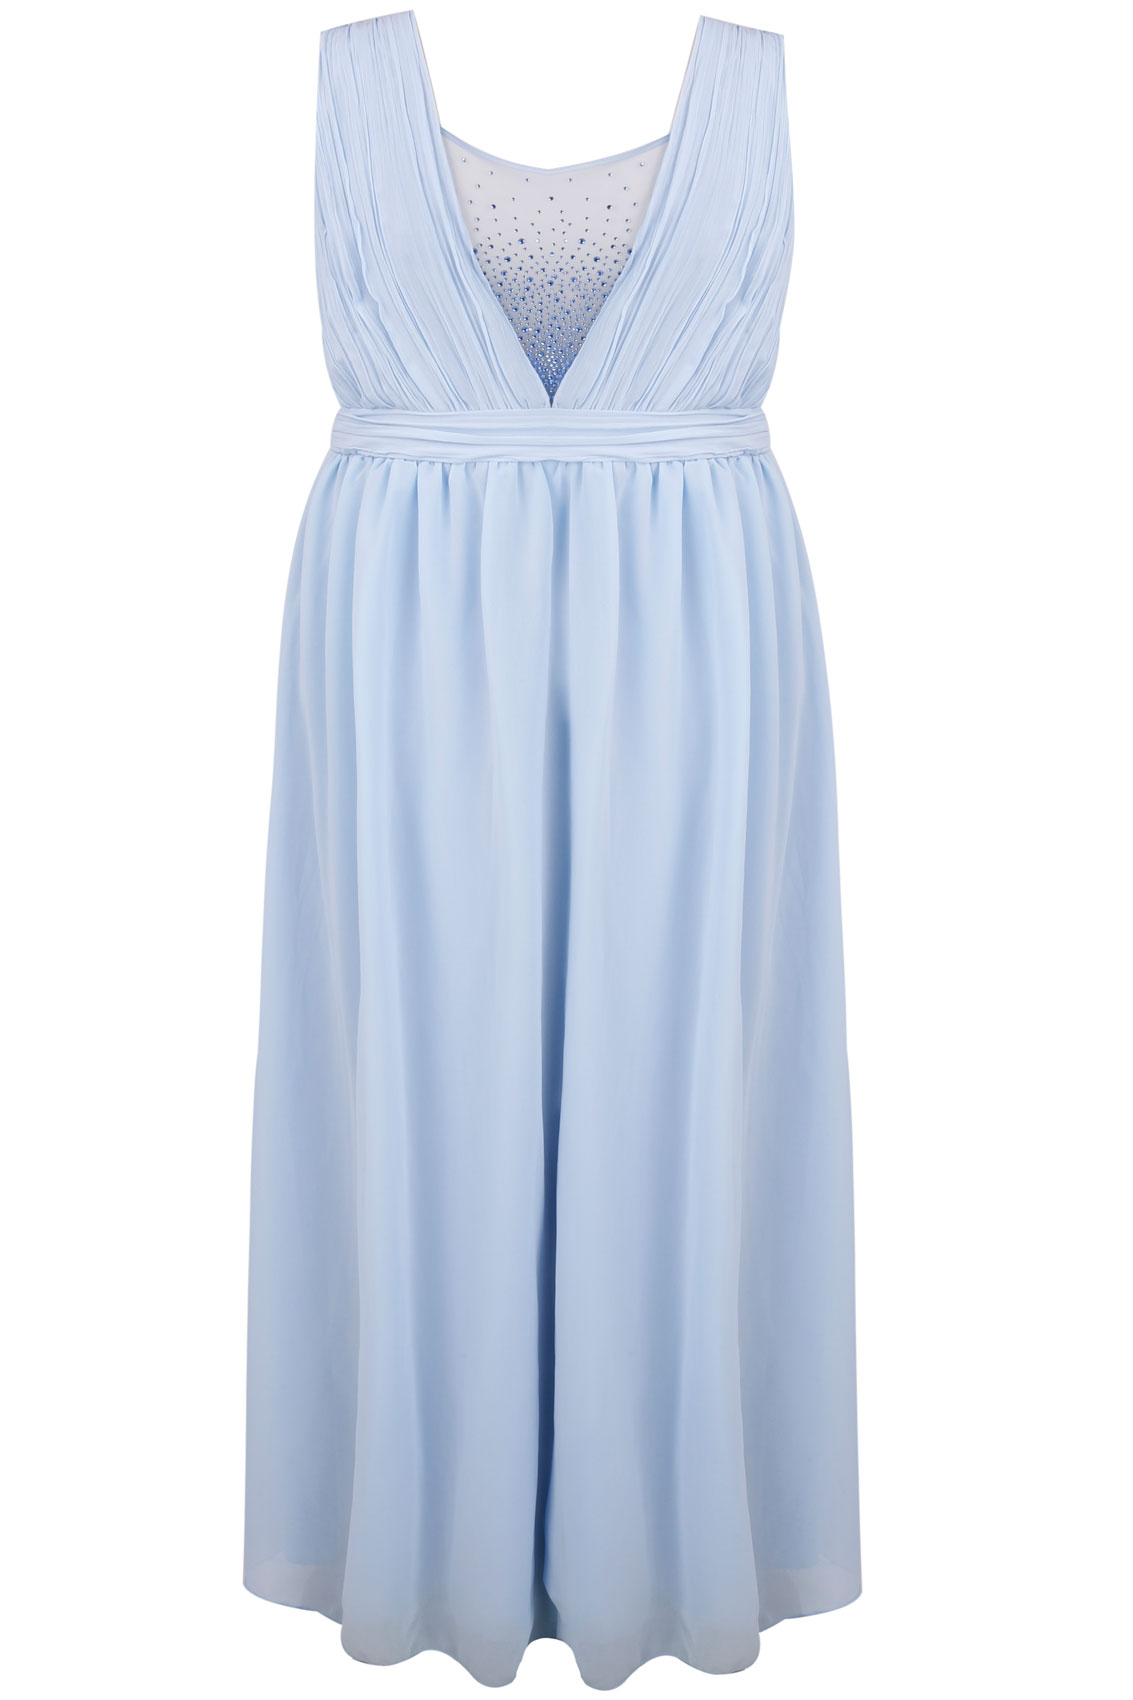 CHI CHI LONDON Pastel Blue Maxi Prom Dress With Diamanté Details Plus ...